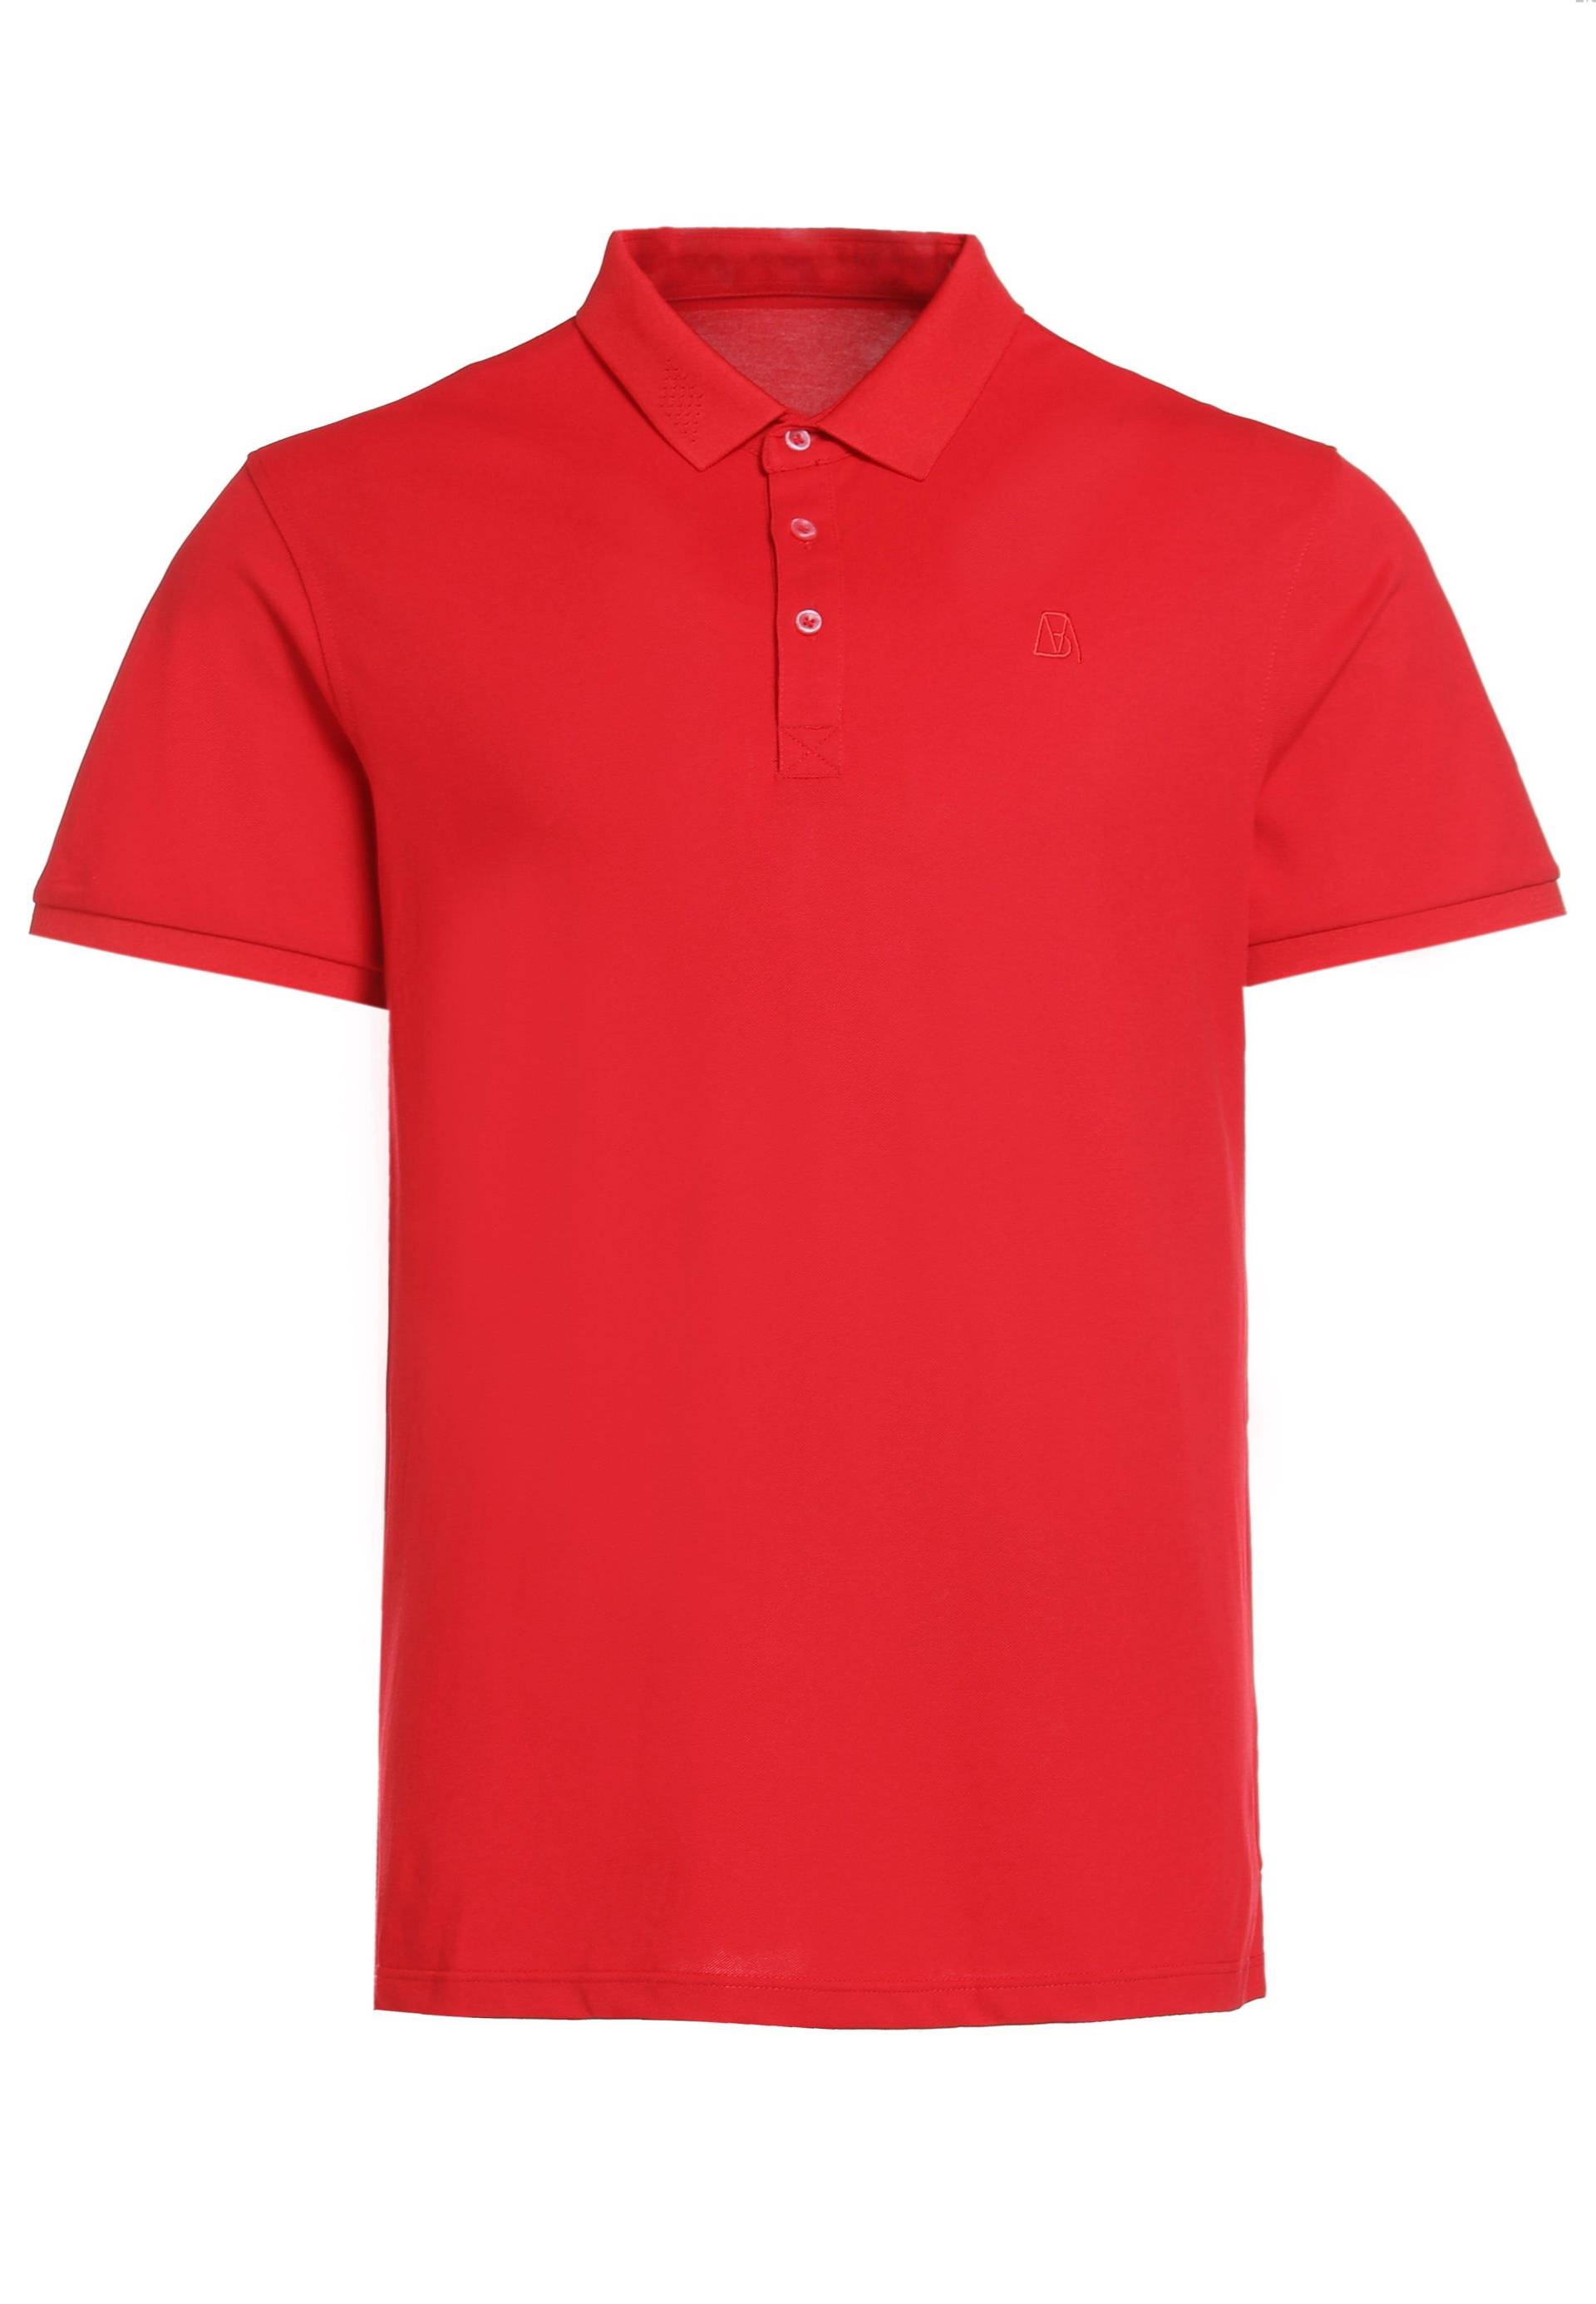 Schlichtes Poloshirt Aus Baumwolle Herren Rot Bunt M von Bellemere New York